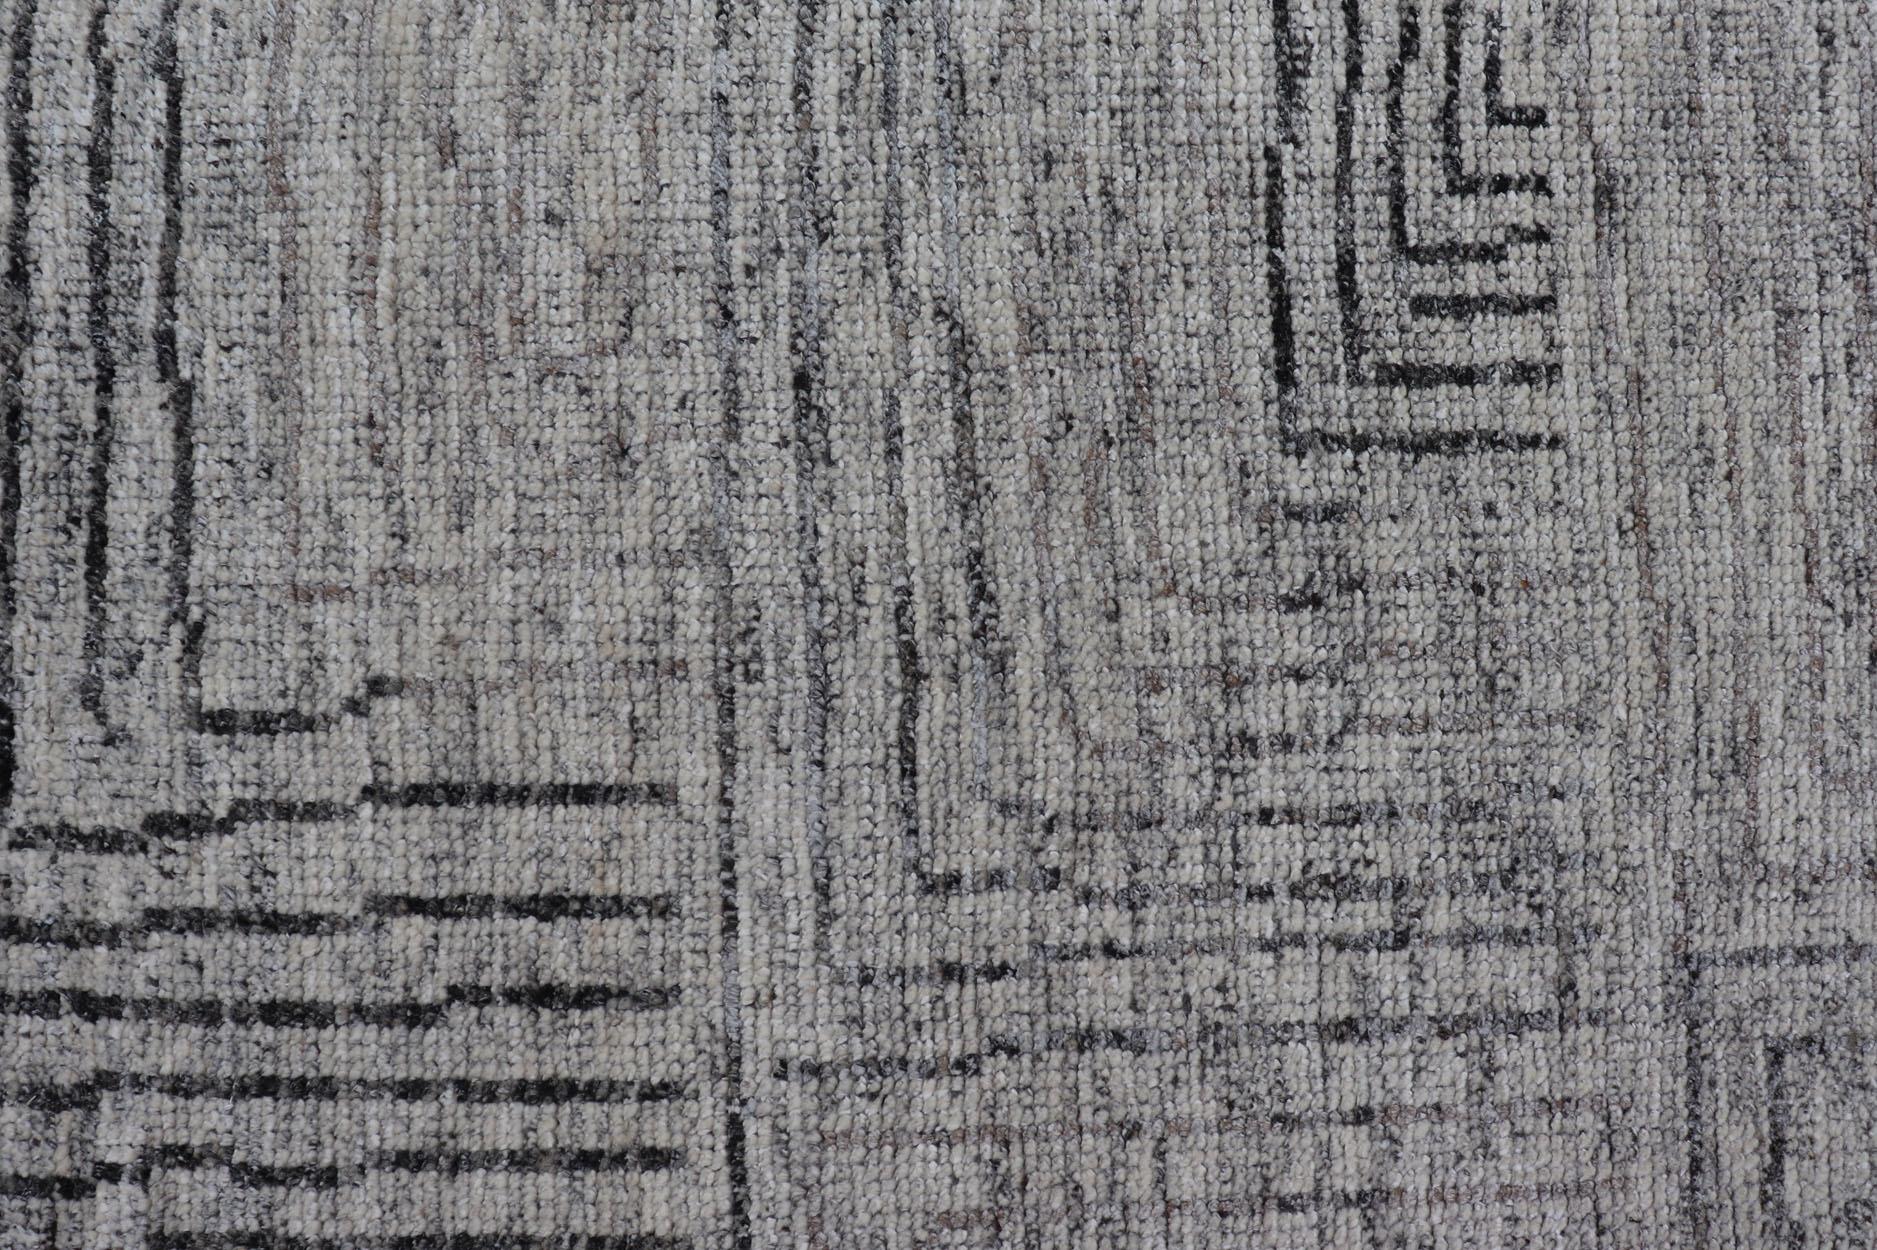 Mesures 6 x 8'8 

Ce tapis moderne présente différentes nuances de gris dans le champ, mélangeant les neutres en une couleur presque homogène. Le design simple des vignes sur tout le terrain, rendu dans un gris foncé. 

Pays d'origine : Inde ;